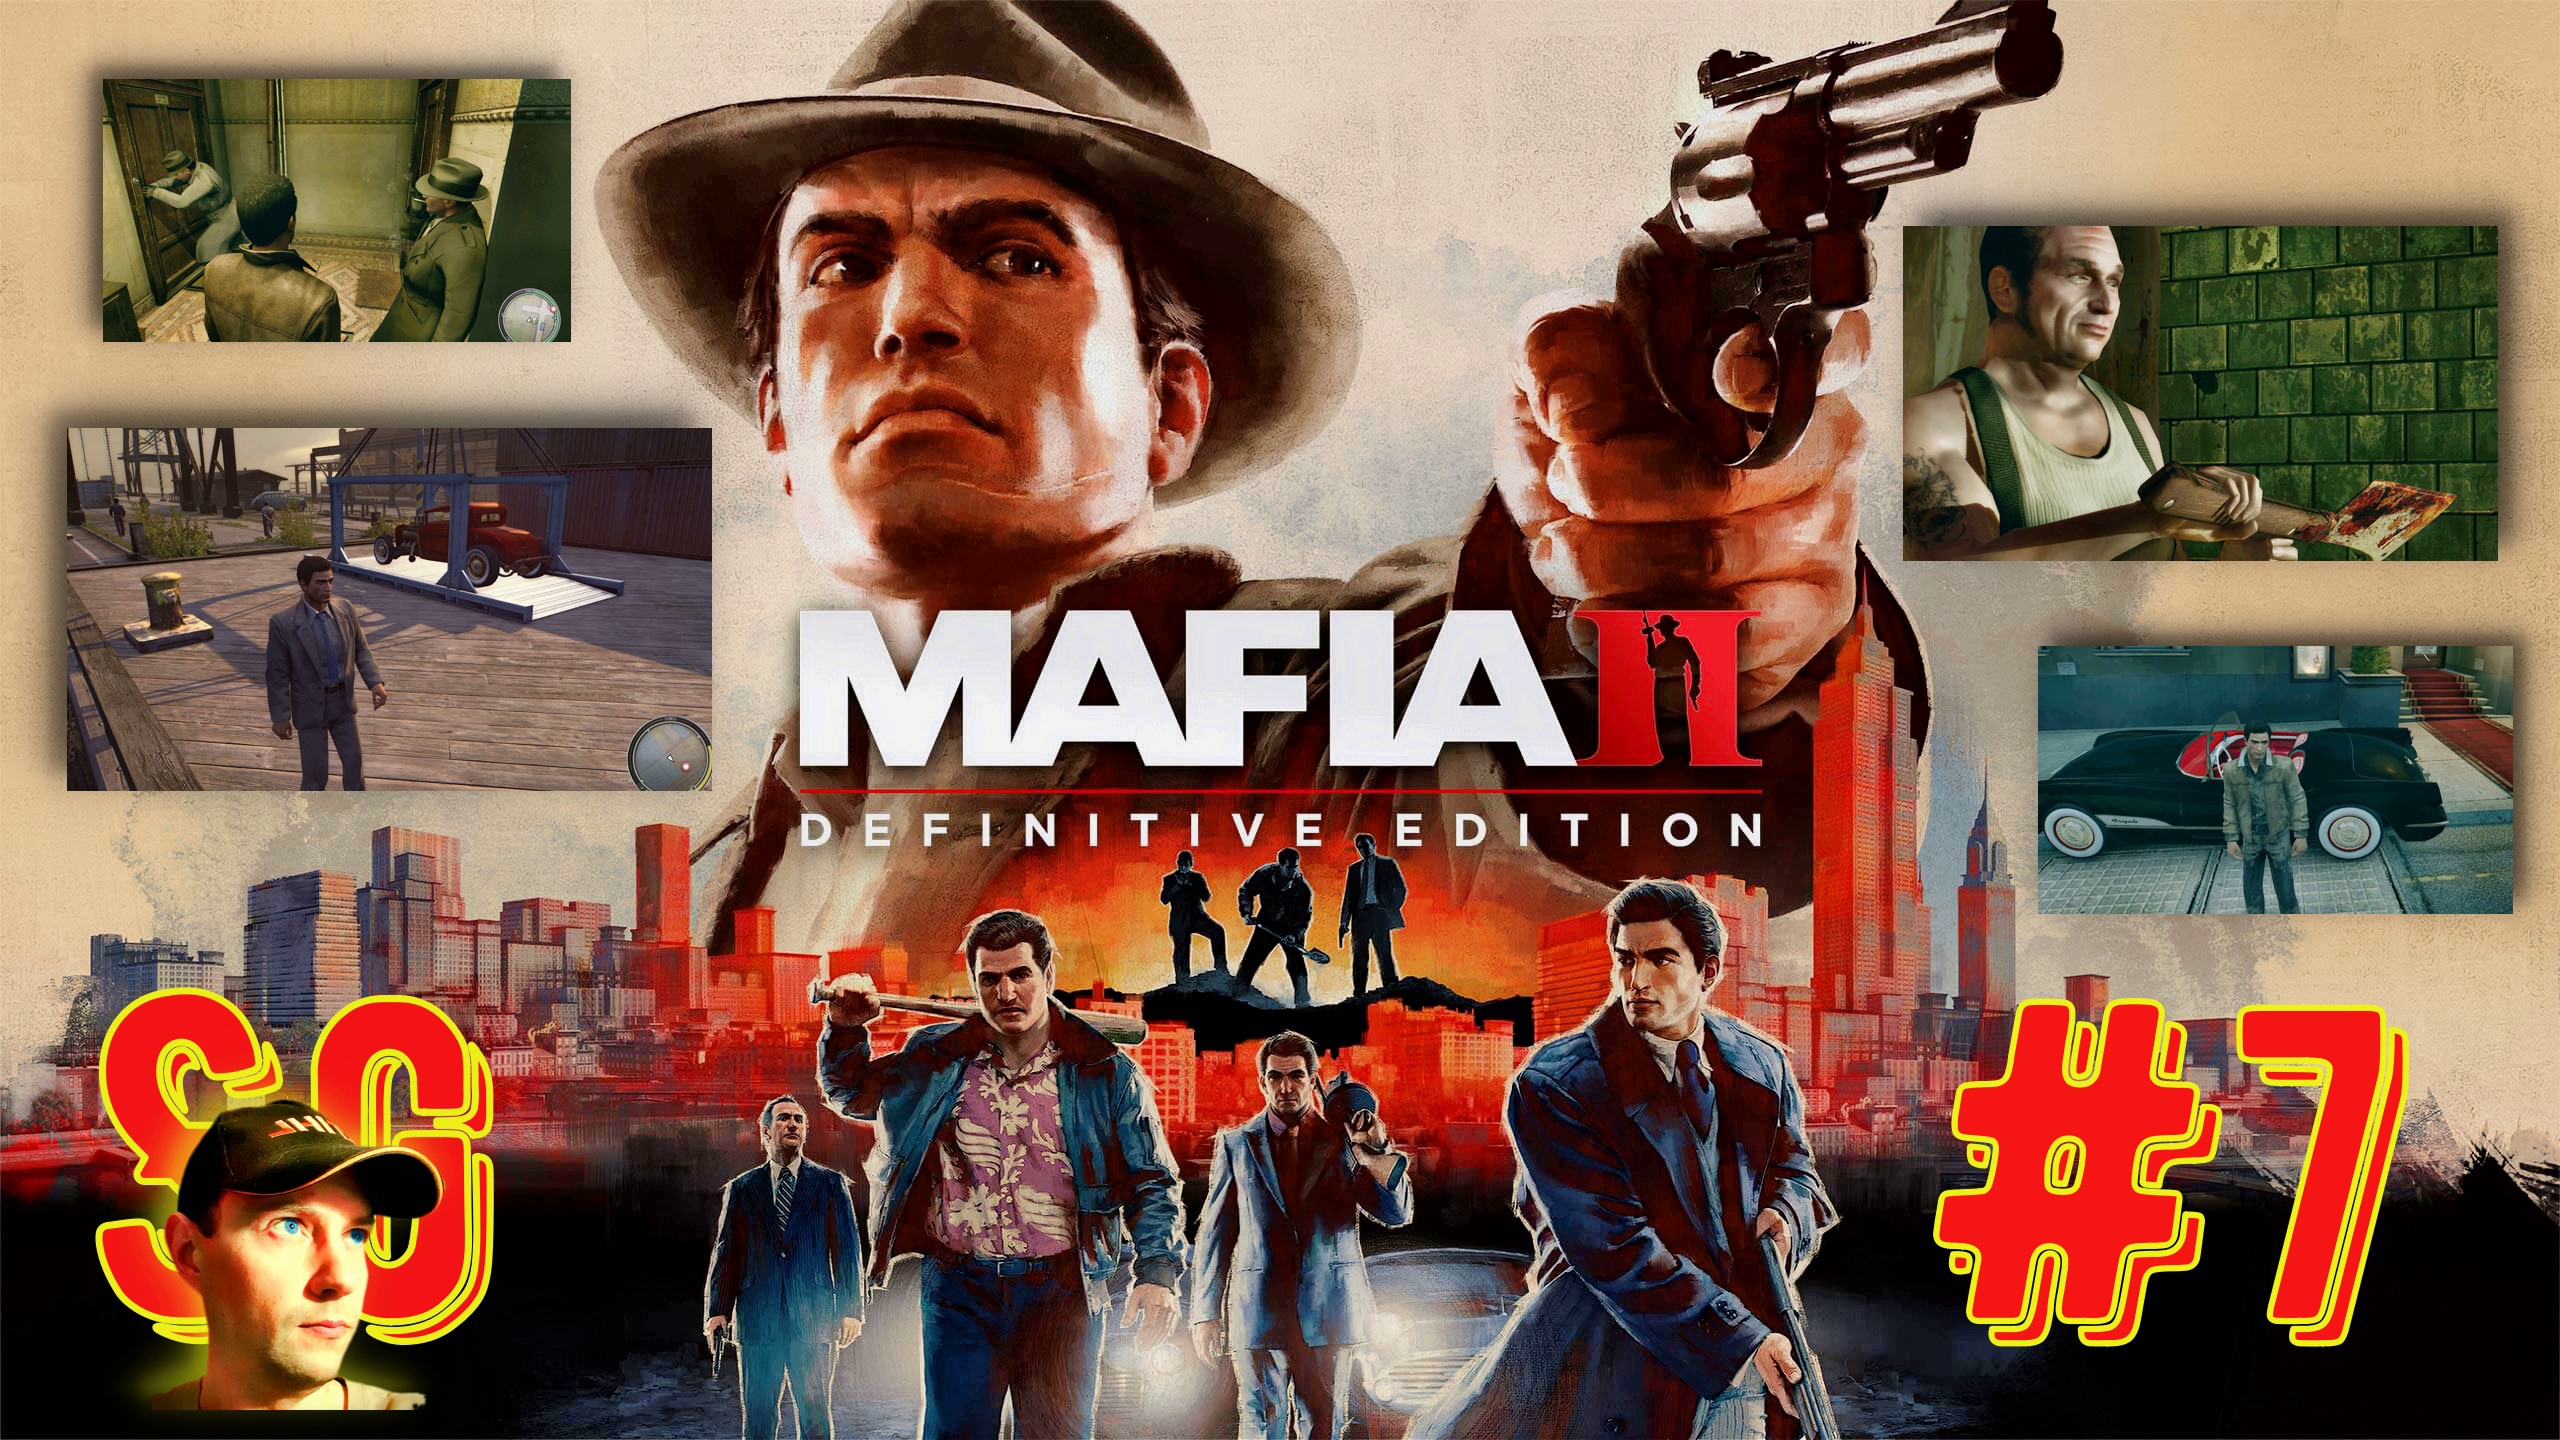 #7 МАФИЯ 2. Mafia II: Definitive Edition. Игрофильм. Грязная работа. Спасти своих на скотобойне.?18